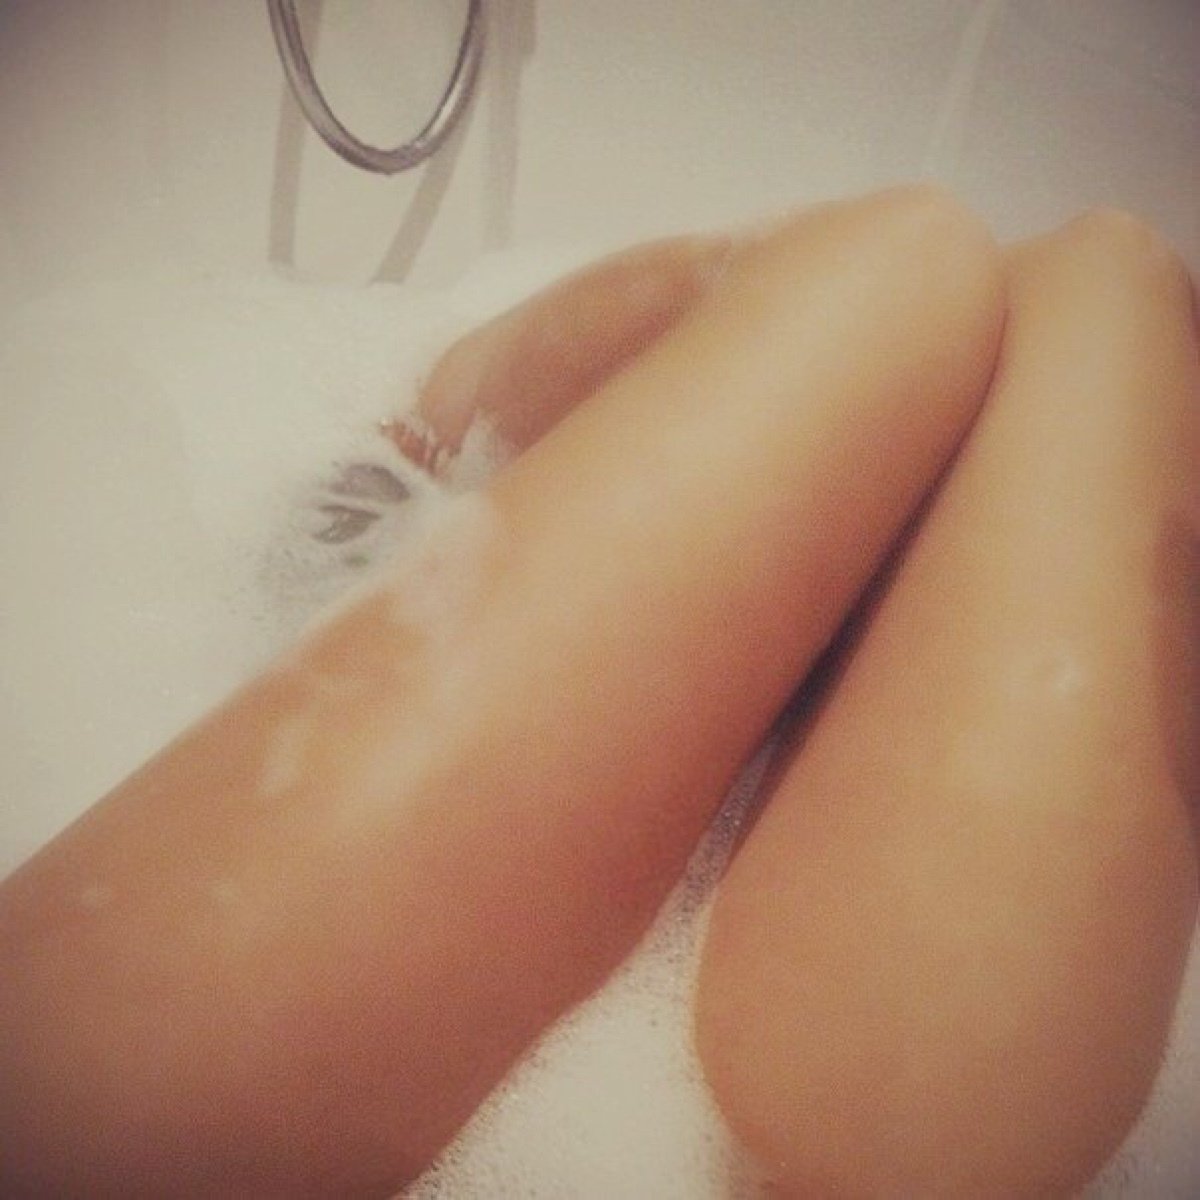 Голая попка девушки в ванной с пеной - фото эротика.